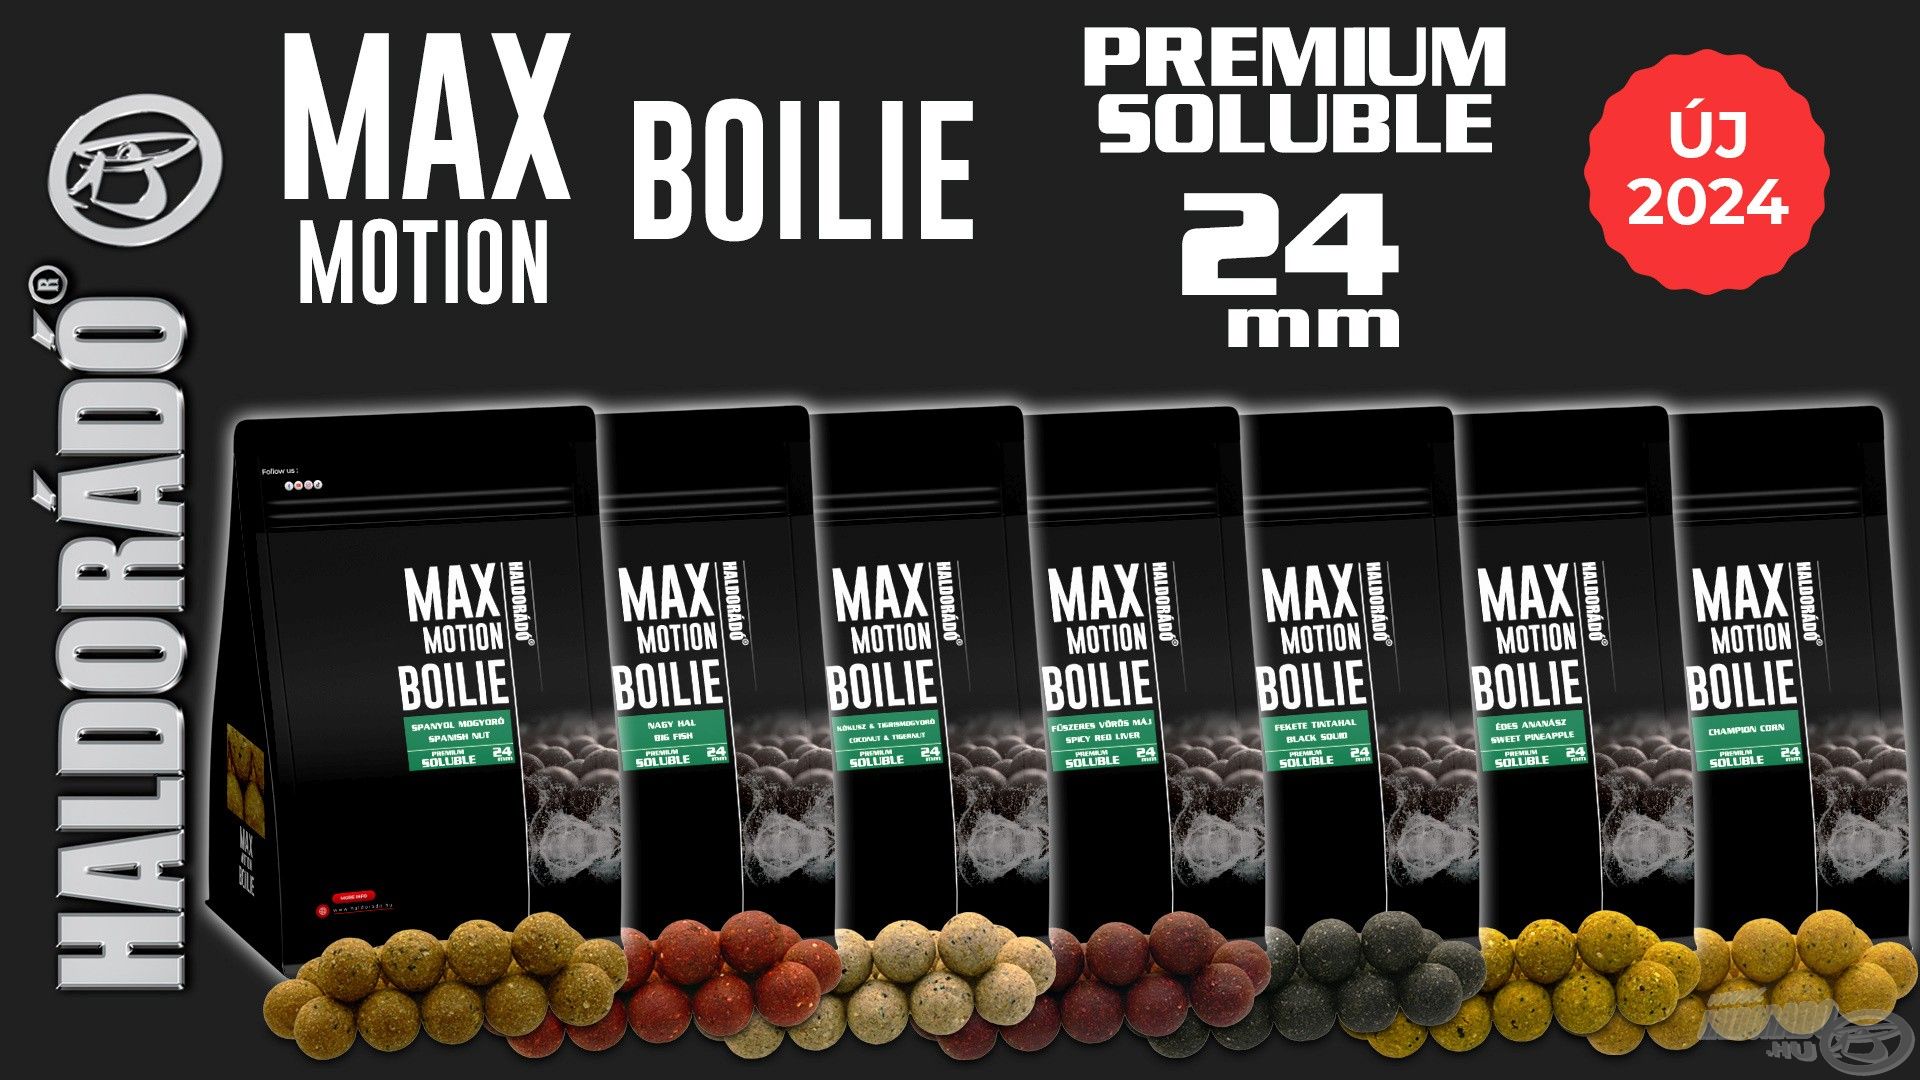 Íme, a MAX MOTION Boilie Premium Soluble 24 mm széria, amely ideális hideg vízi pontyhorgászathoz is